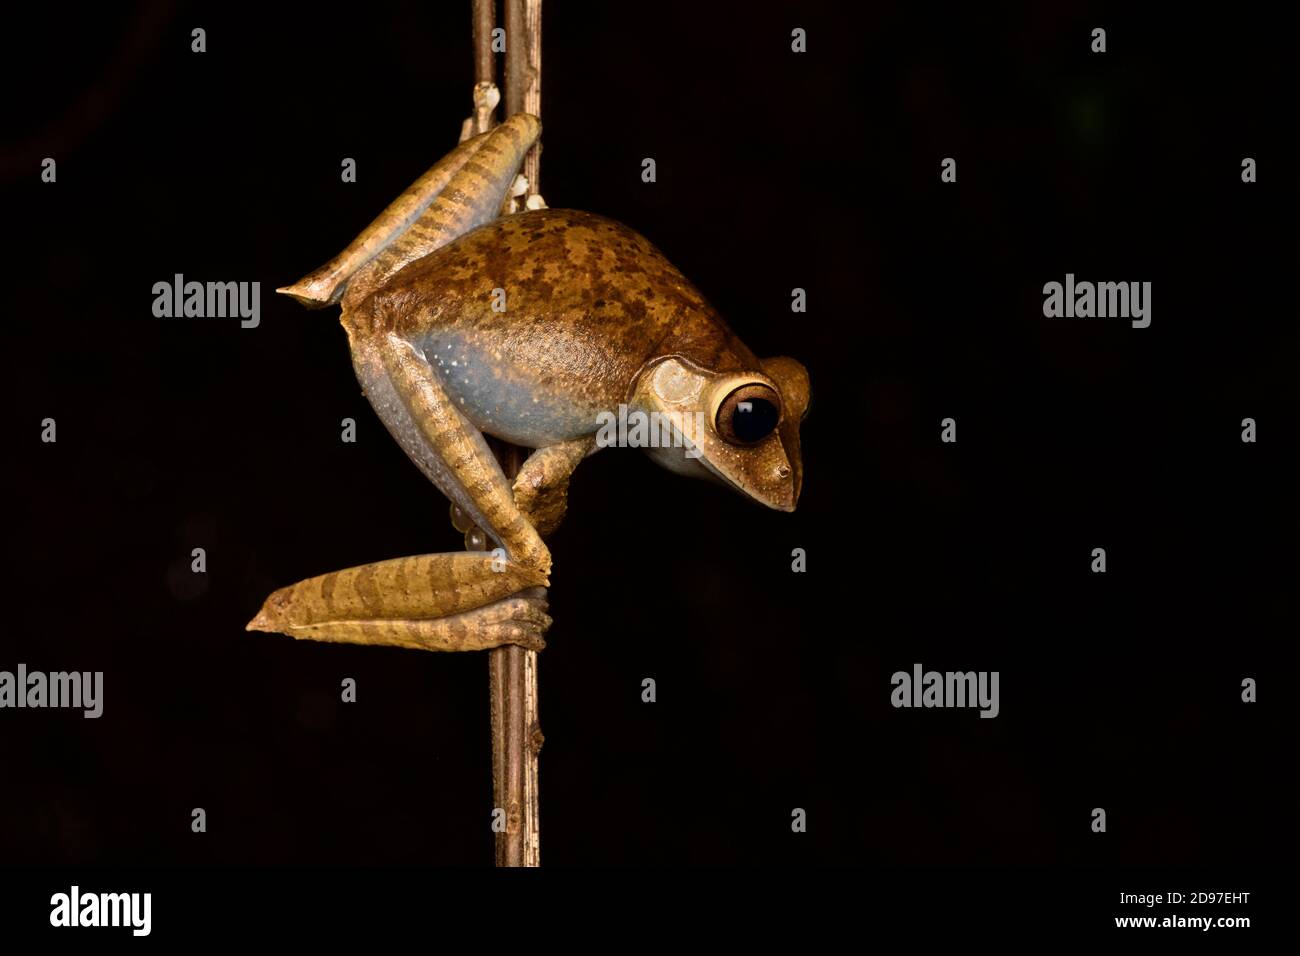 Madagascar Bright-eyed Frog (Boophis madagascariensis) on vine, Andasibe, Madagascar Stock Photo